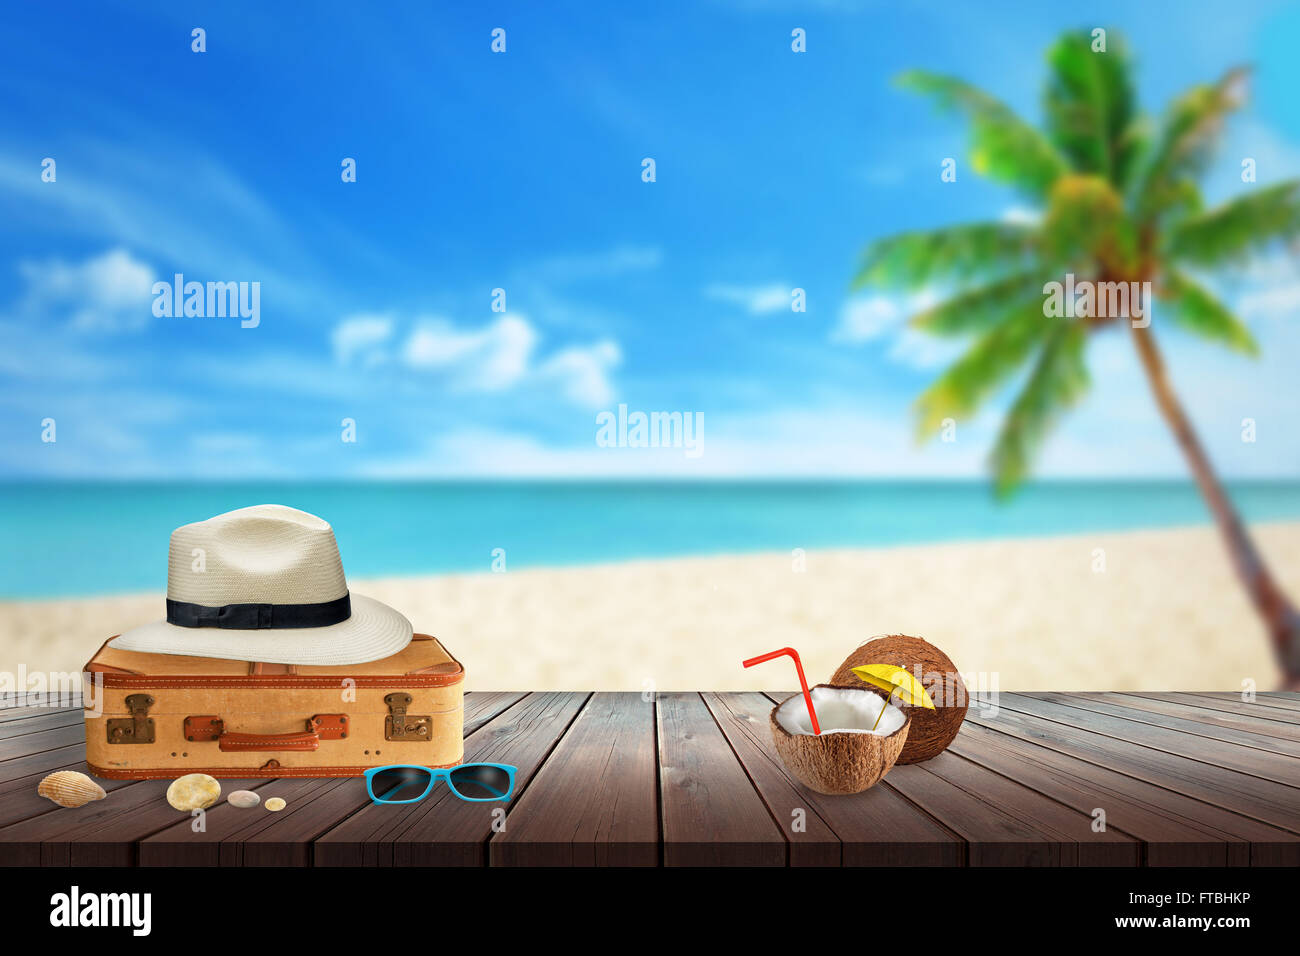 Hat, valise, lunettes de soleil, de cocotiers, la plage de shell sur table. Espace libre pour le texte. Plage, mer, palmier et ciel bleu Banque D'Images